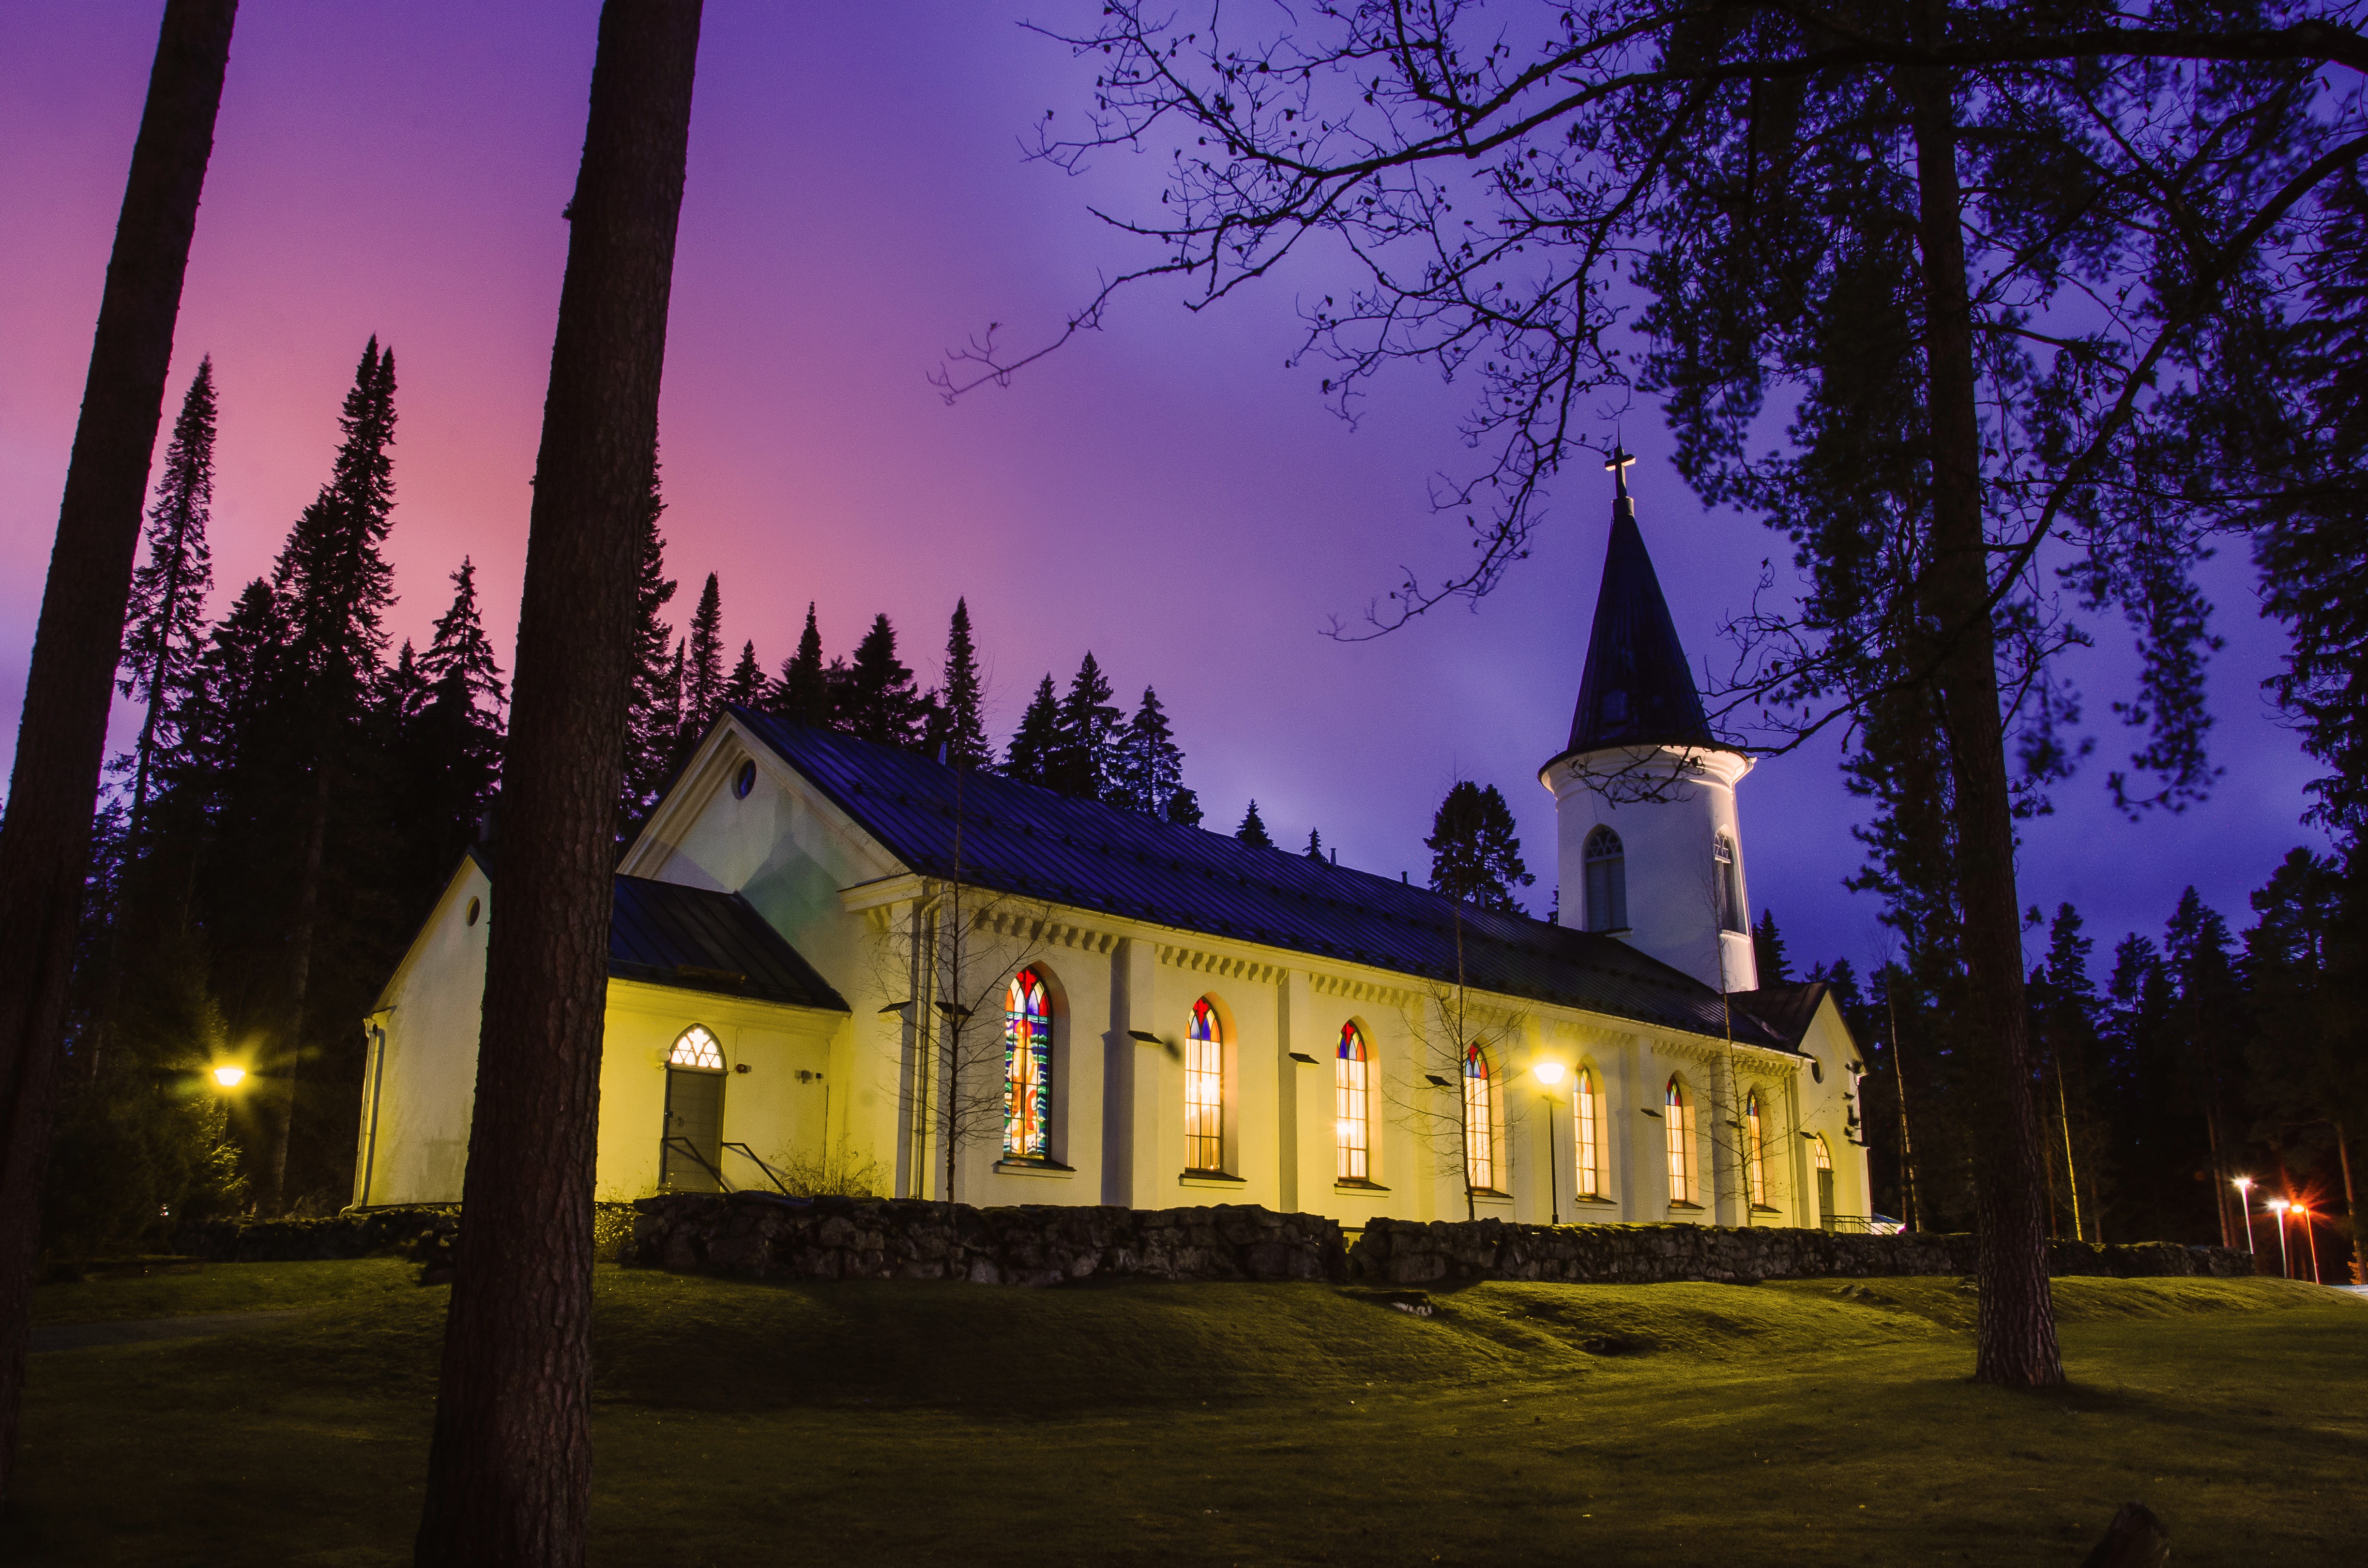 Törnävän kirkko kuvattuna violetin sävyisen maiseman edessä.